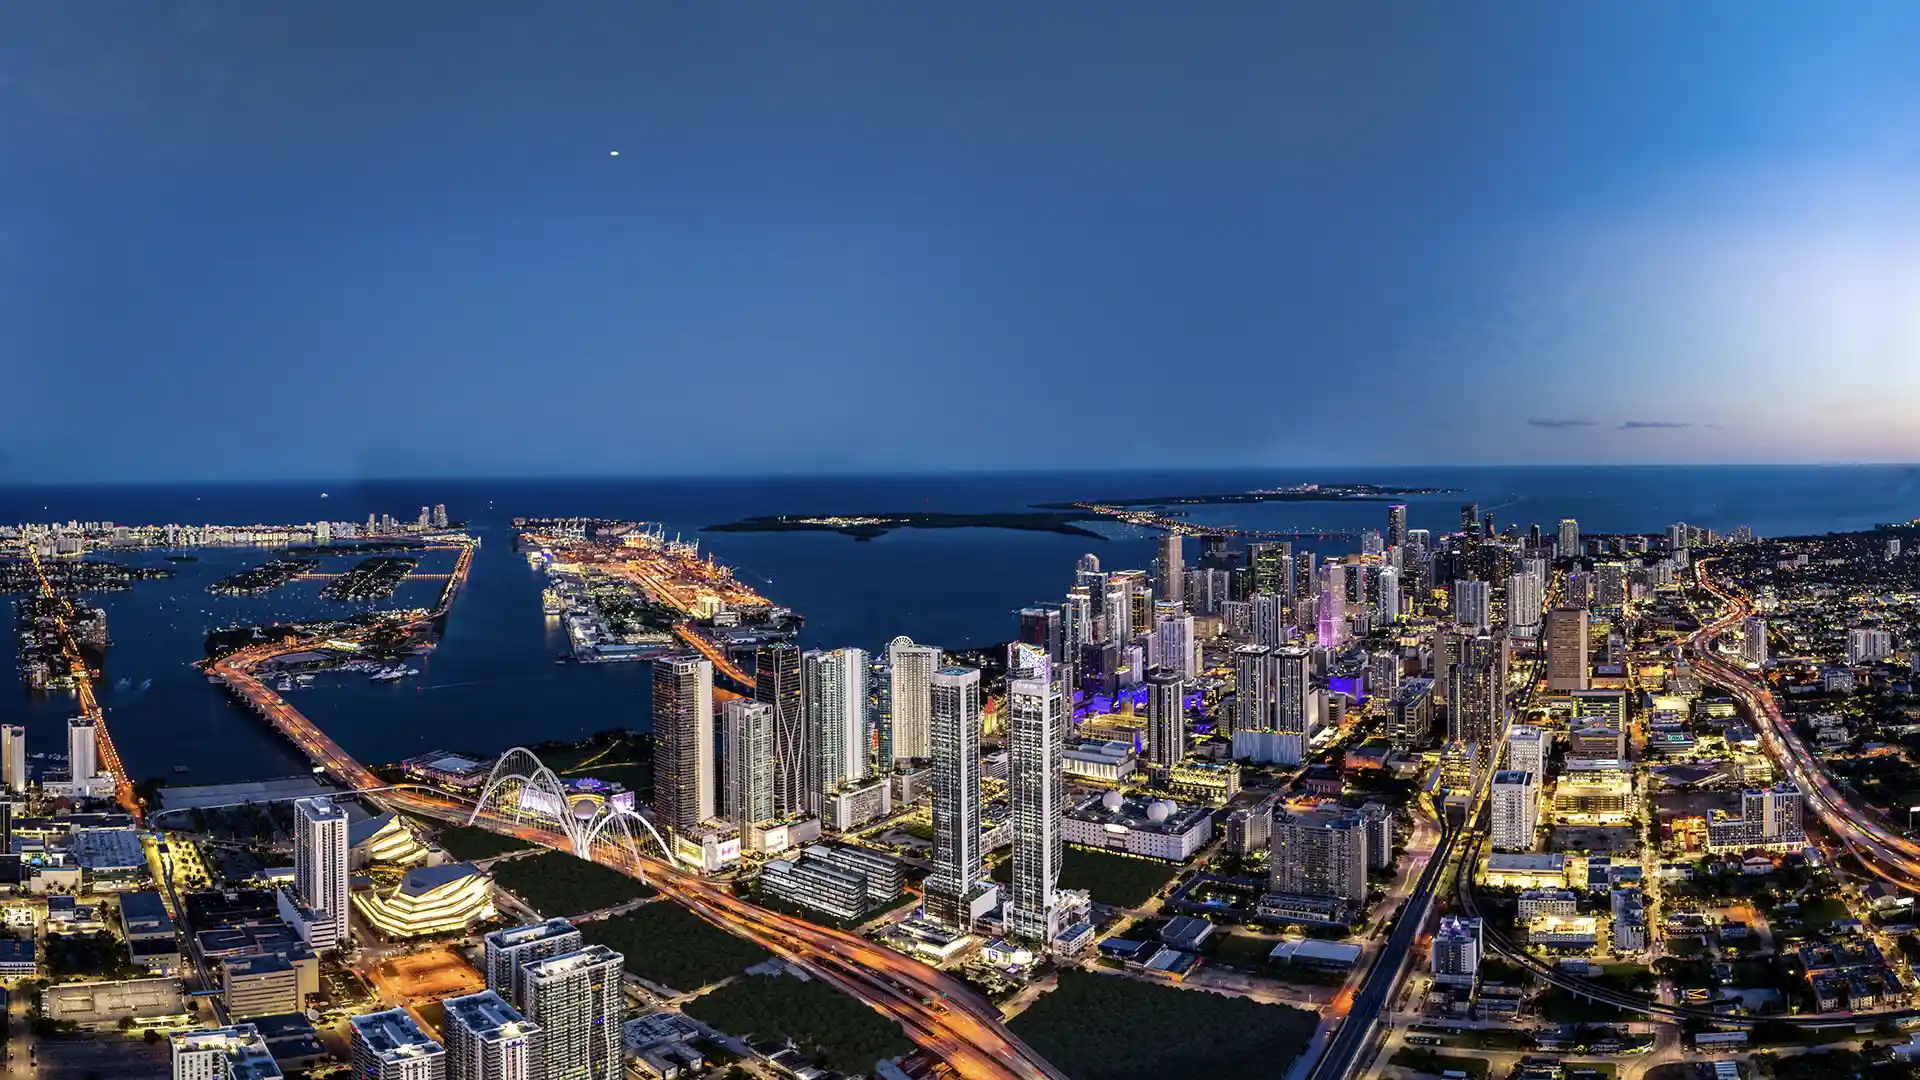 El nuevo rascacielos de lujo en Miami: E11EVEN Beyond en imágenes